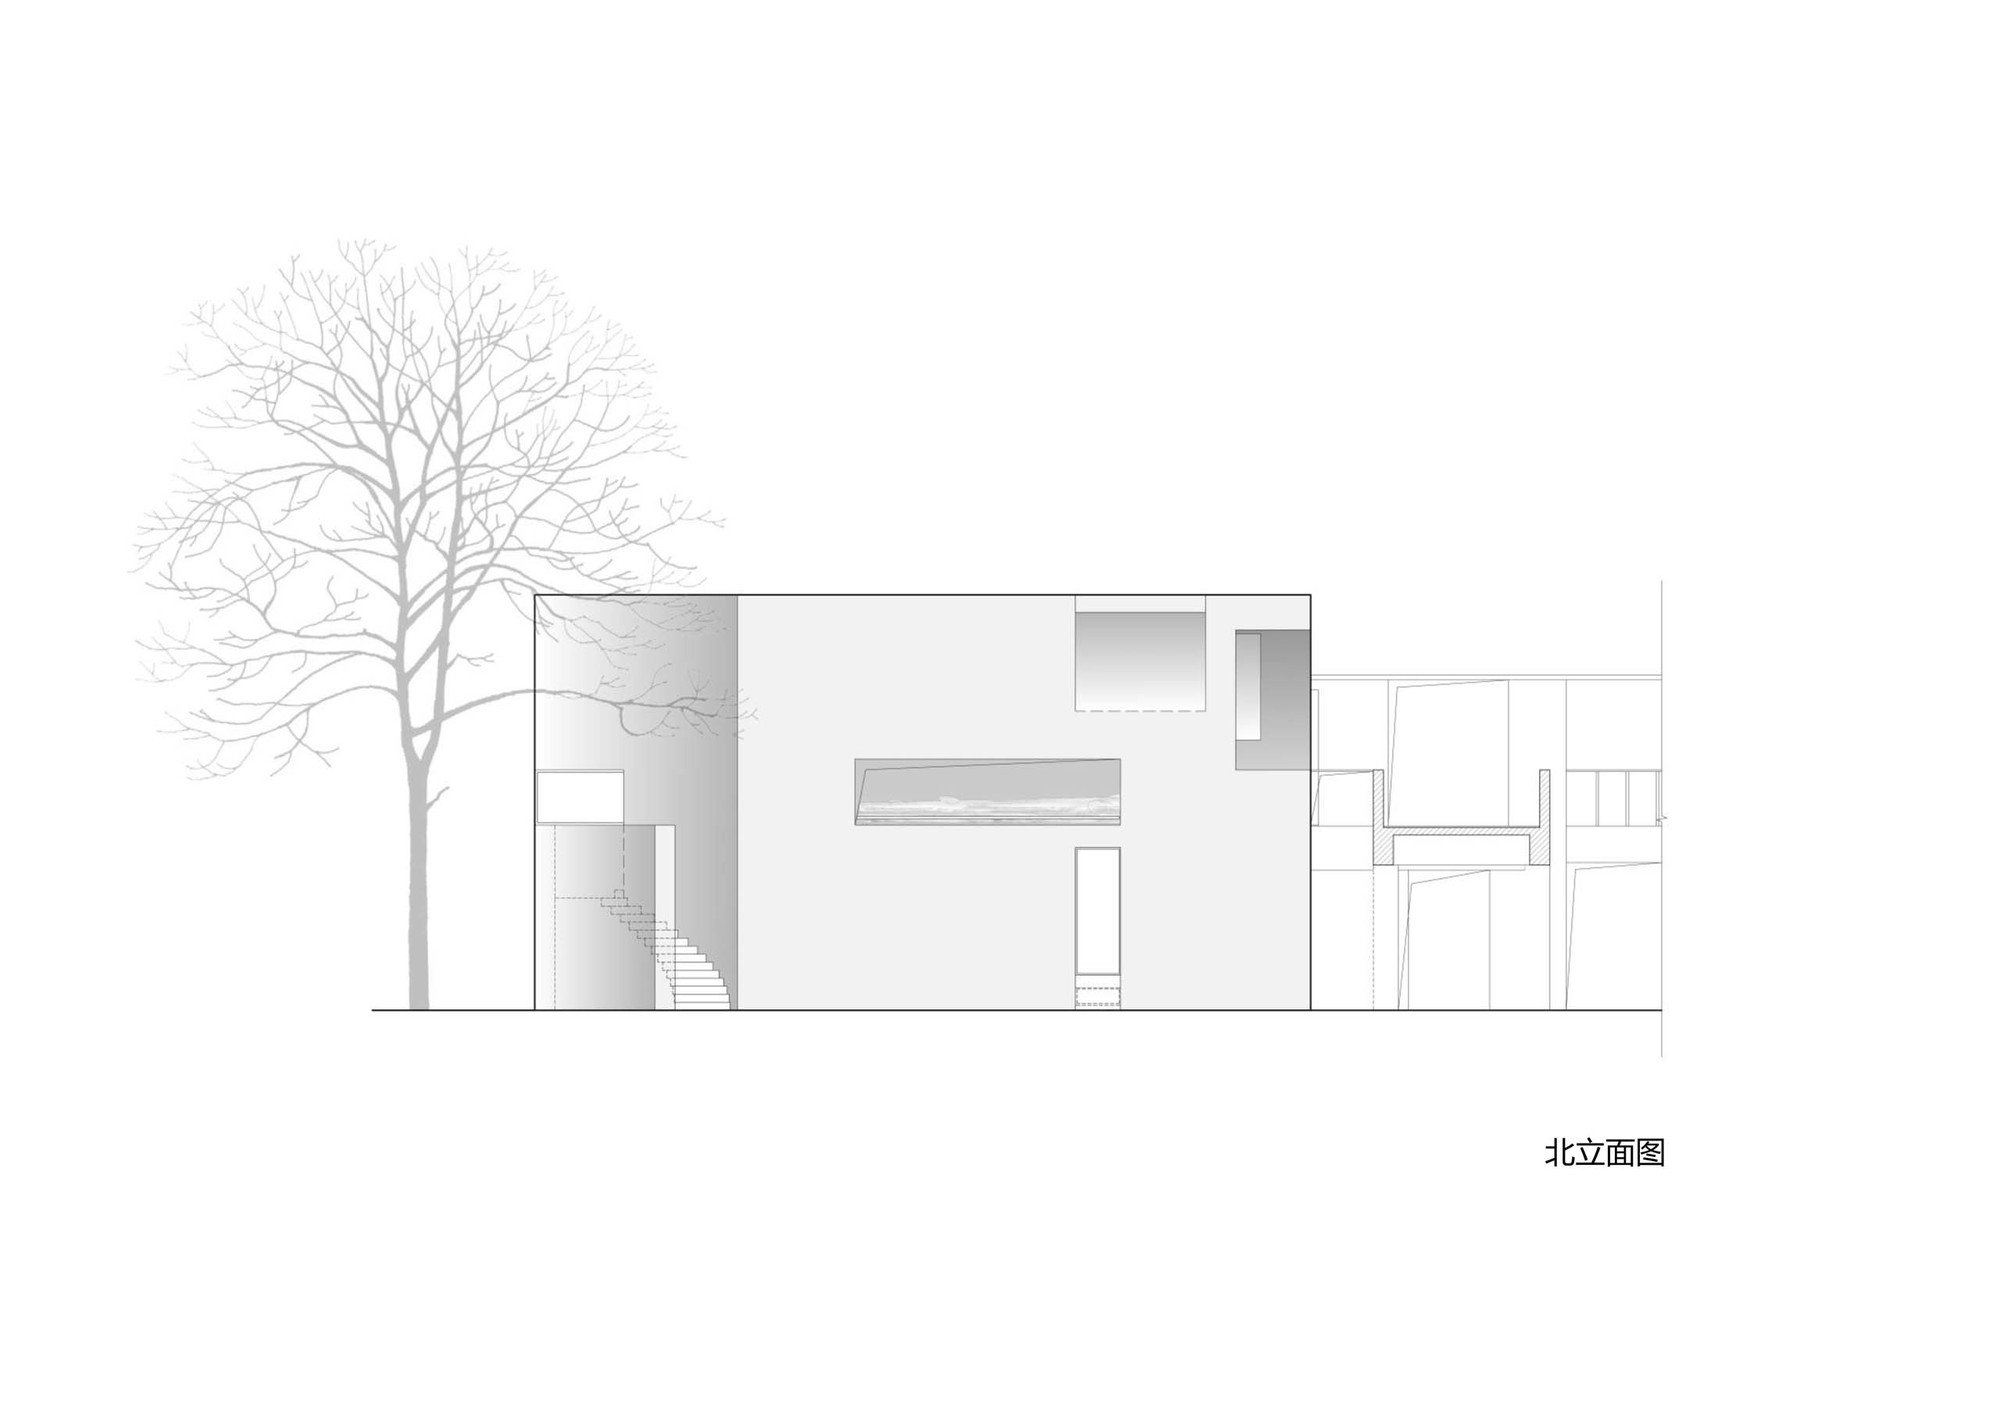 26_南京艺术学院加建展馆-北立面.jpg